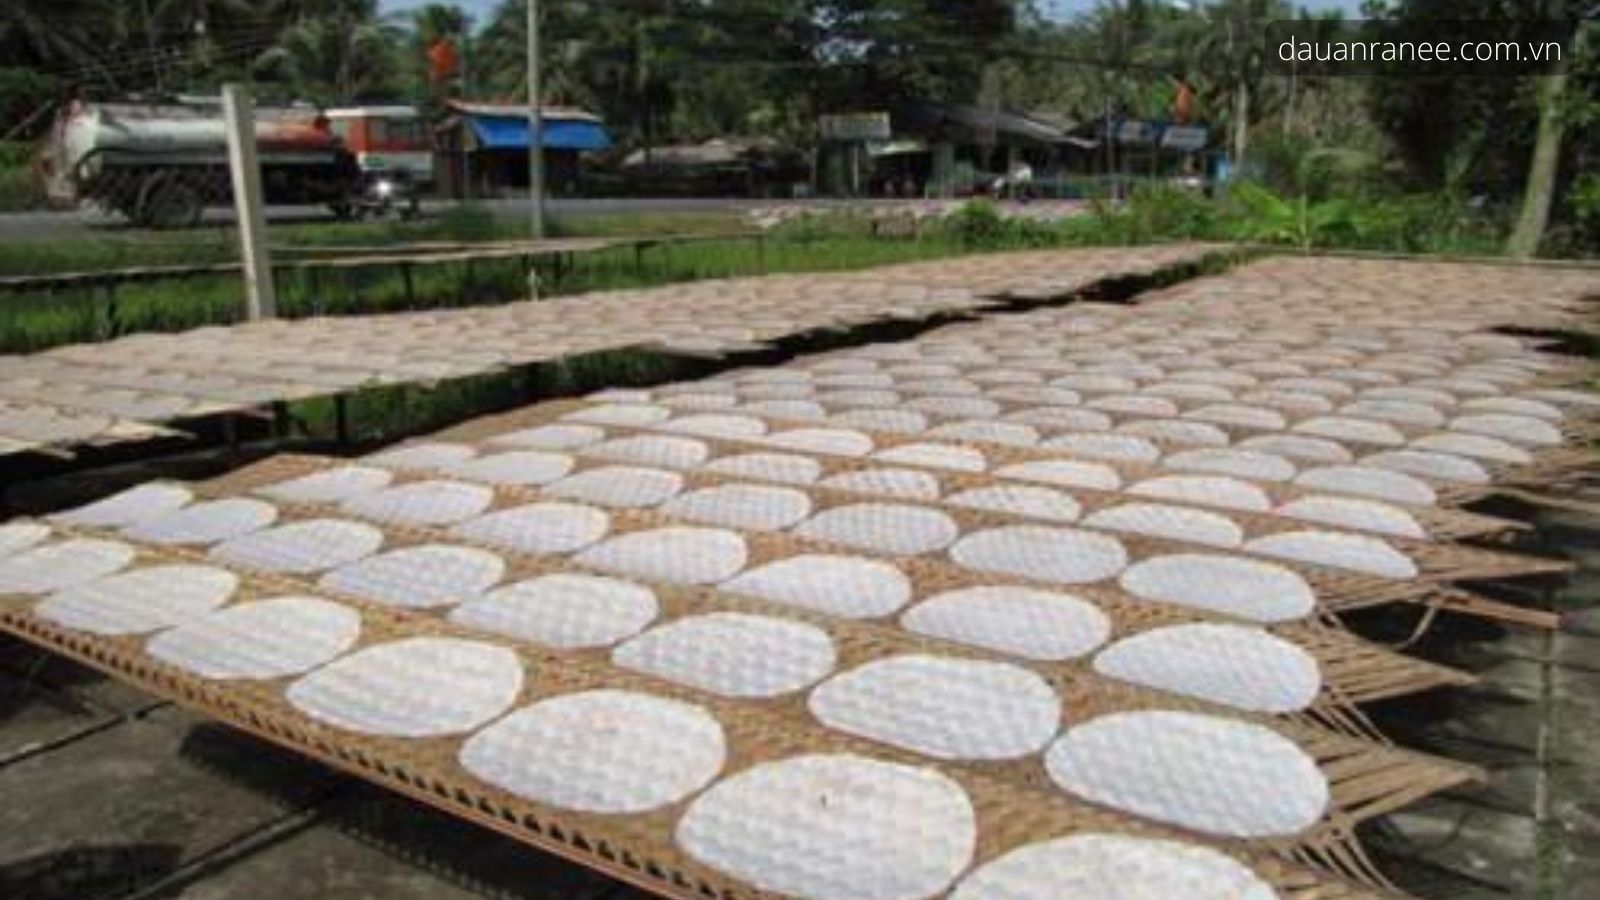 Bánh tráng Hòa Đa – Đặc sản Phú Yên bình dị